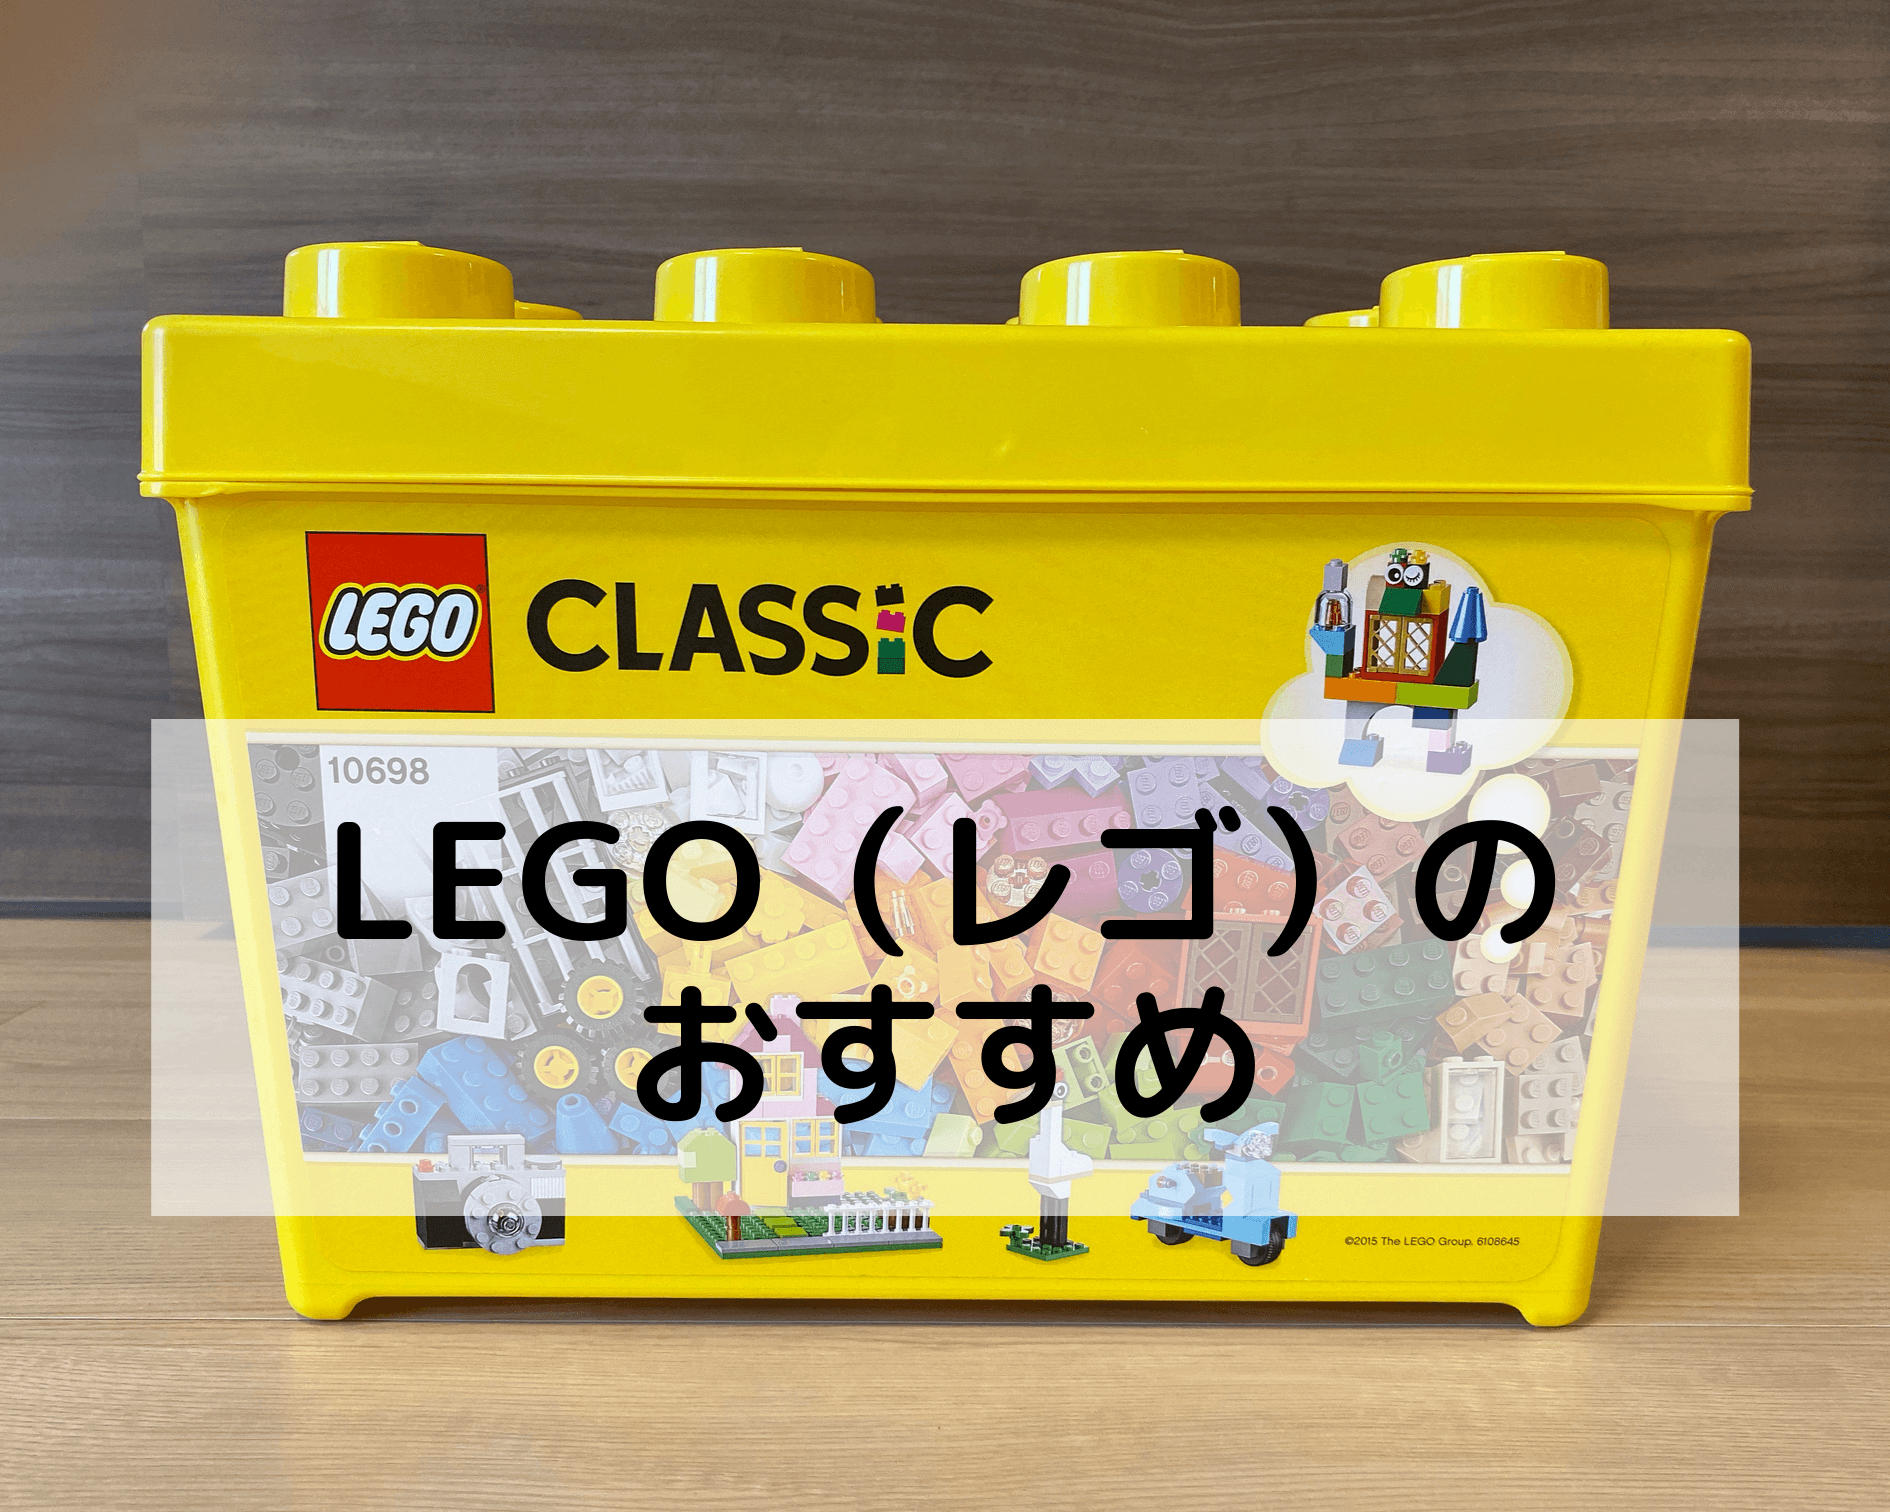 LEGO（レゴ）のおすすめ レゴブロックは知育にも良い！？初めてならレゴクラシックがおすすめ｜ちょこダイアリー